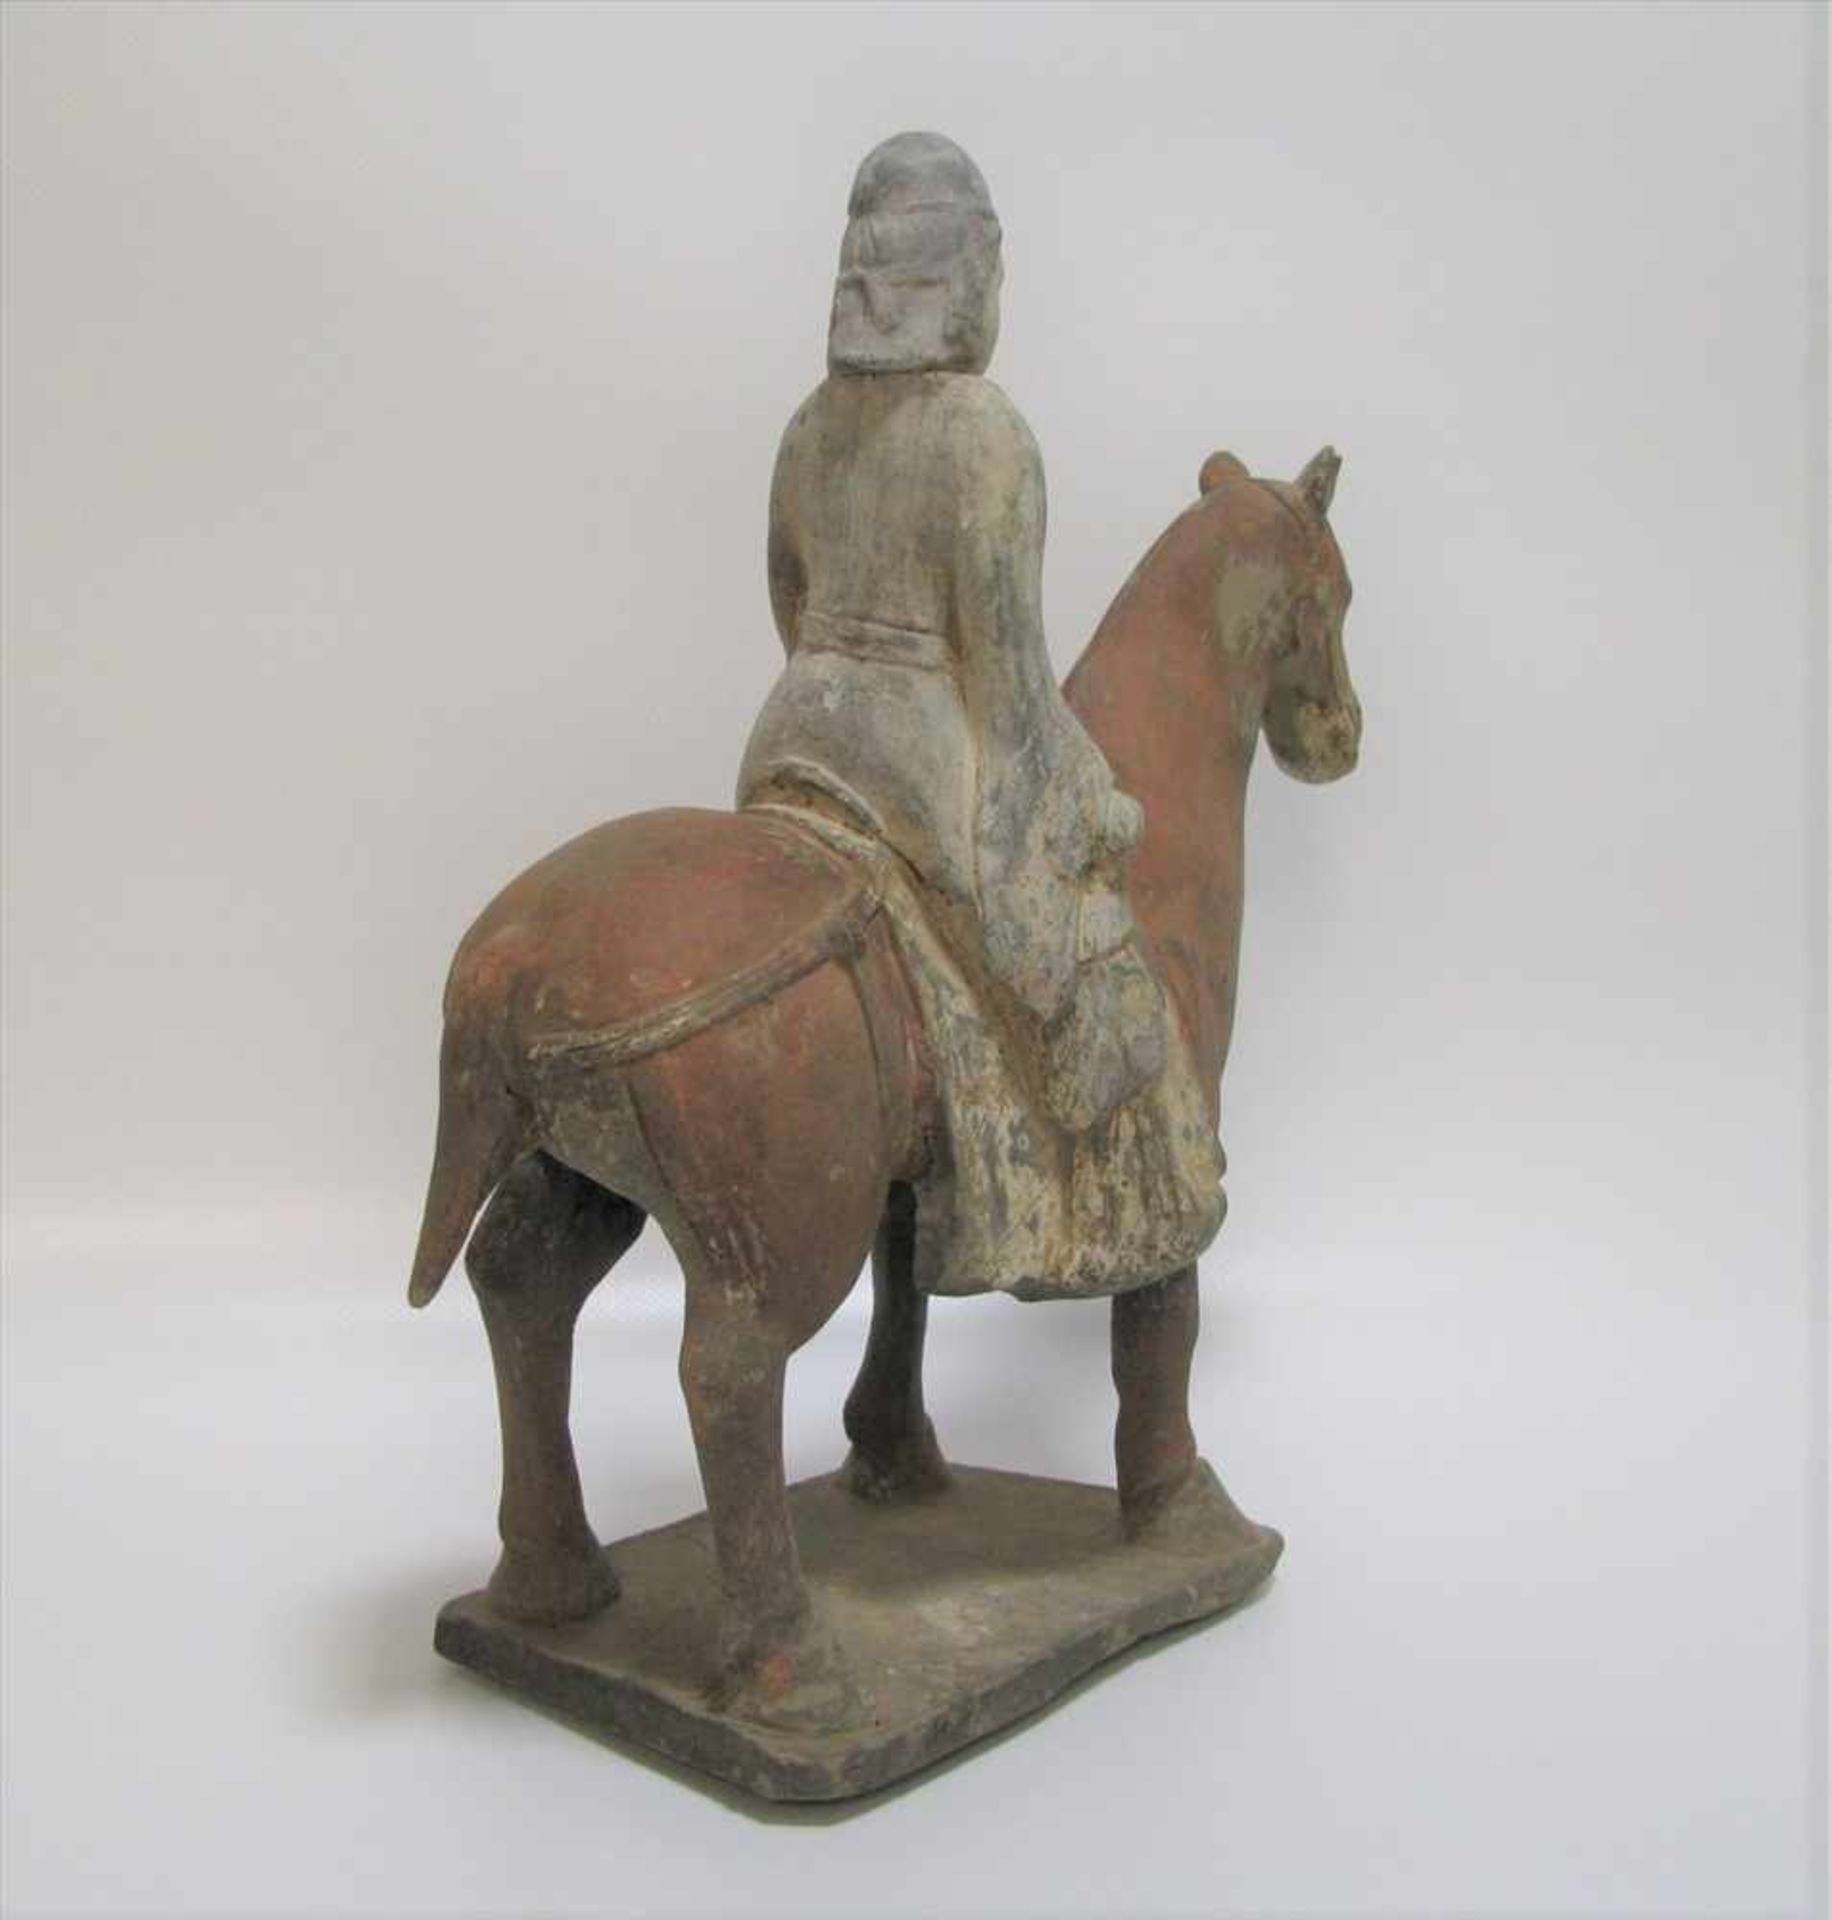 Reiter zu Pferd, China, Nördliche Qi Dynastie, 550 - 577 n.Chr., Terrakotta mit Resten von - Image 3 of 4